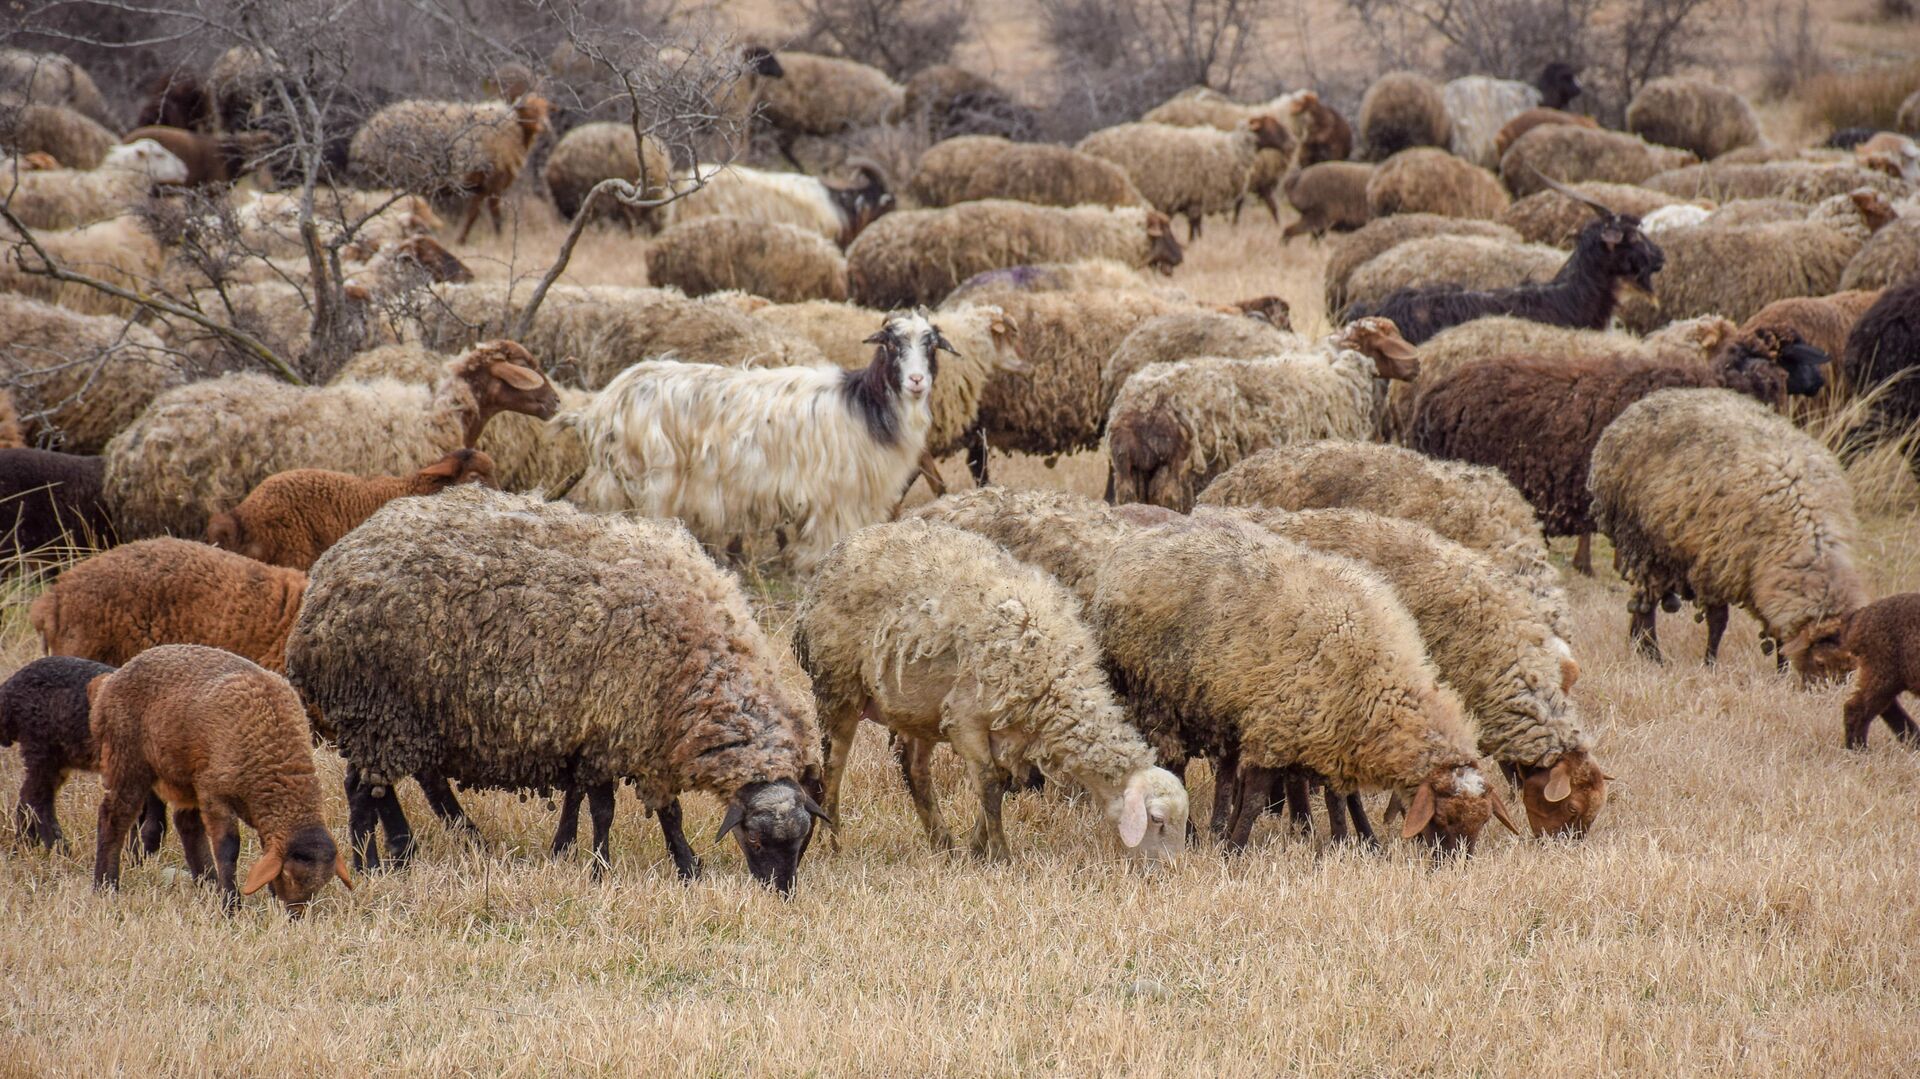 Ceyrançöl düzündə yaşayan çobanlar - Sputnik Азербайджан, 1920, 17.09.2021